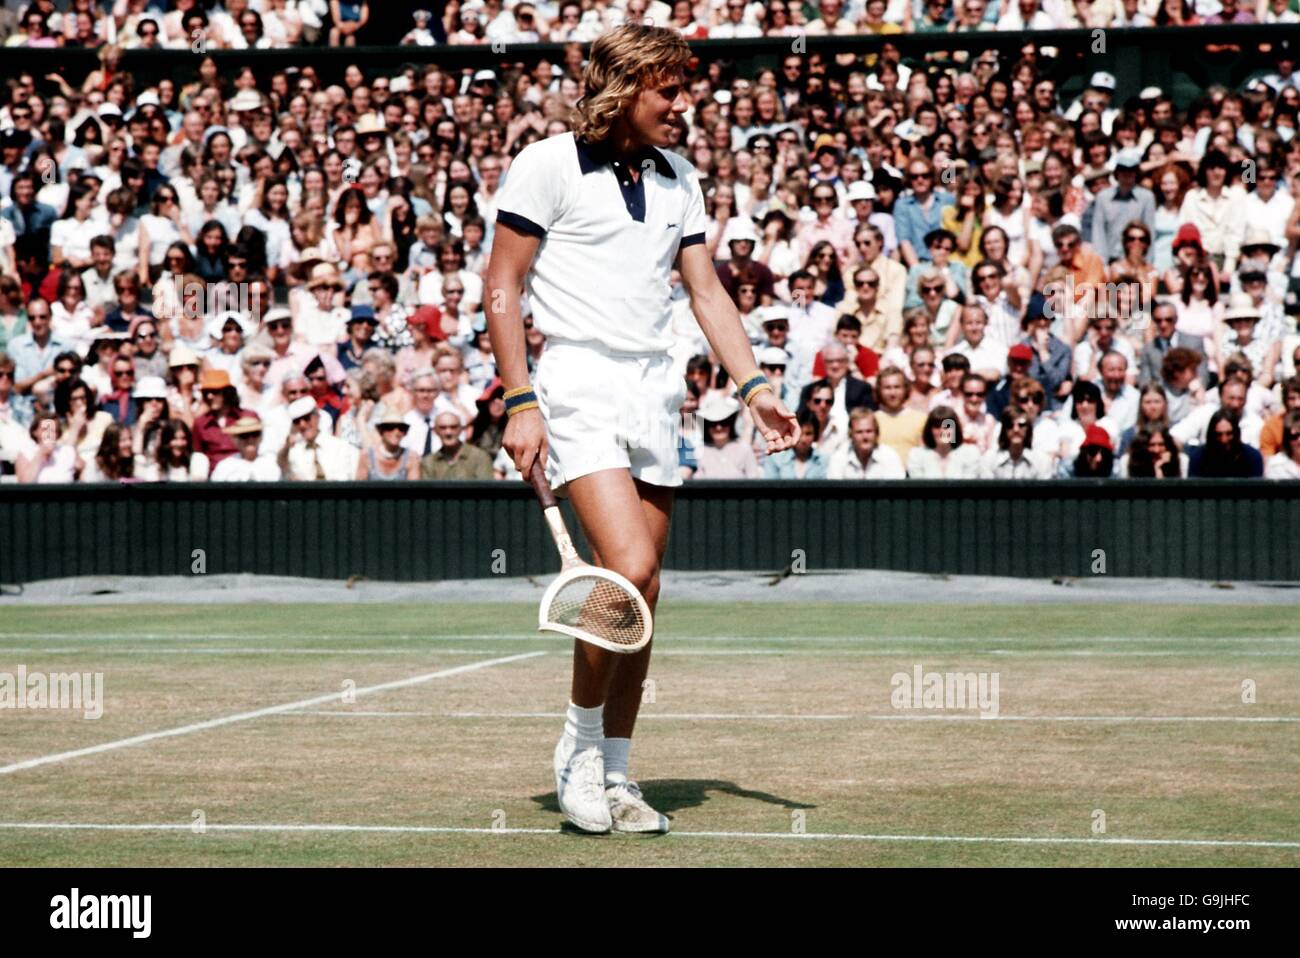 Tennis - Wimbledon Championships 1973 - Viertelfinale der Herren - Bjorn Borg gegen Roger Taylor. Bjorn Borg hält seinen verdrehten Schläger während seines Viertelfinalmatches mit Roger Taylor Stockfoto